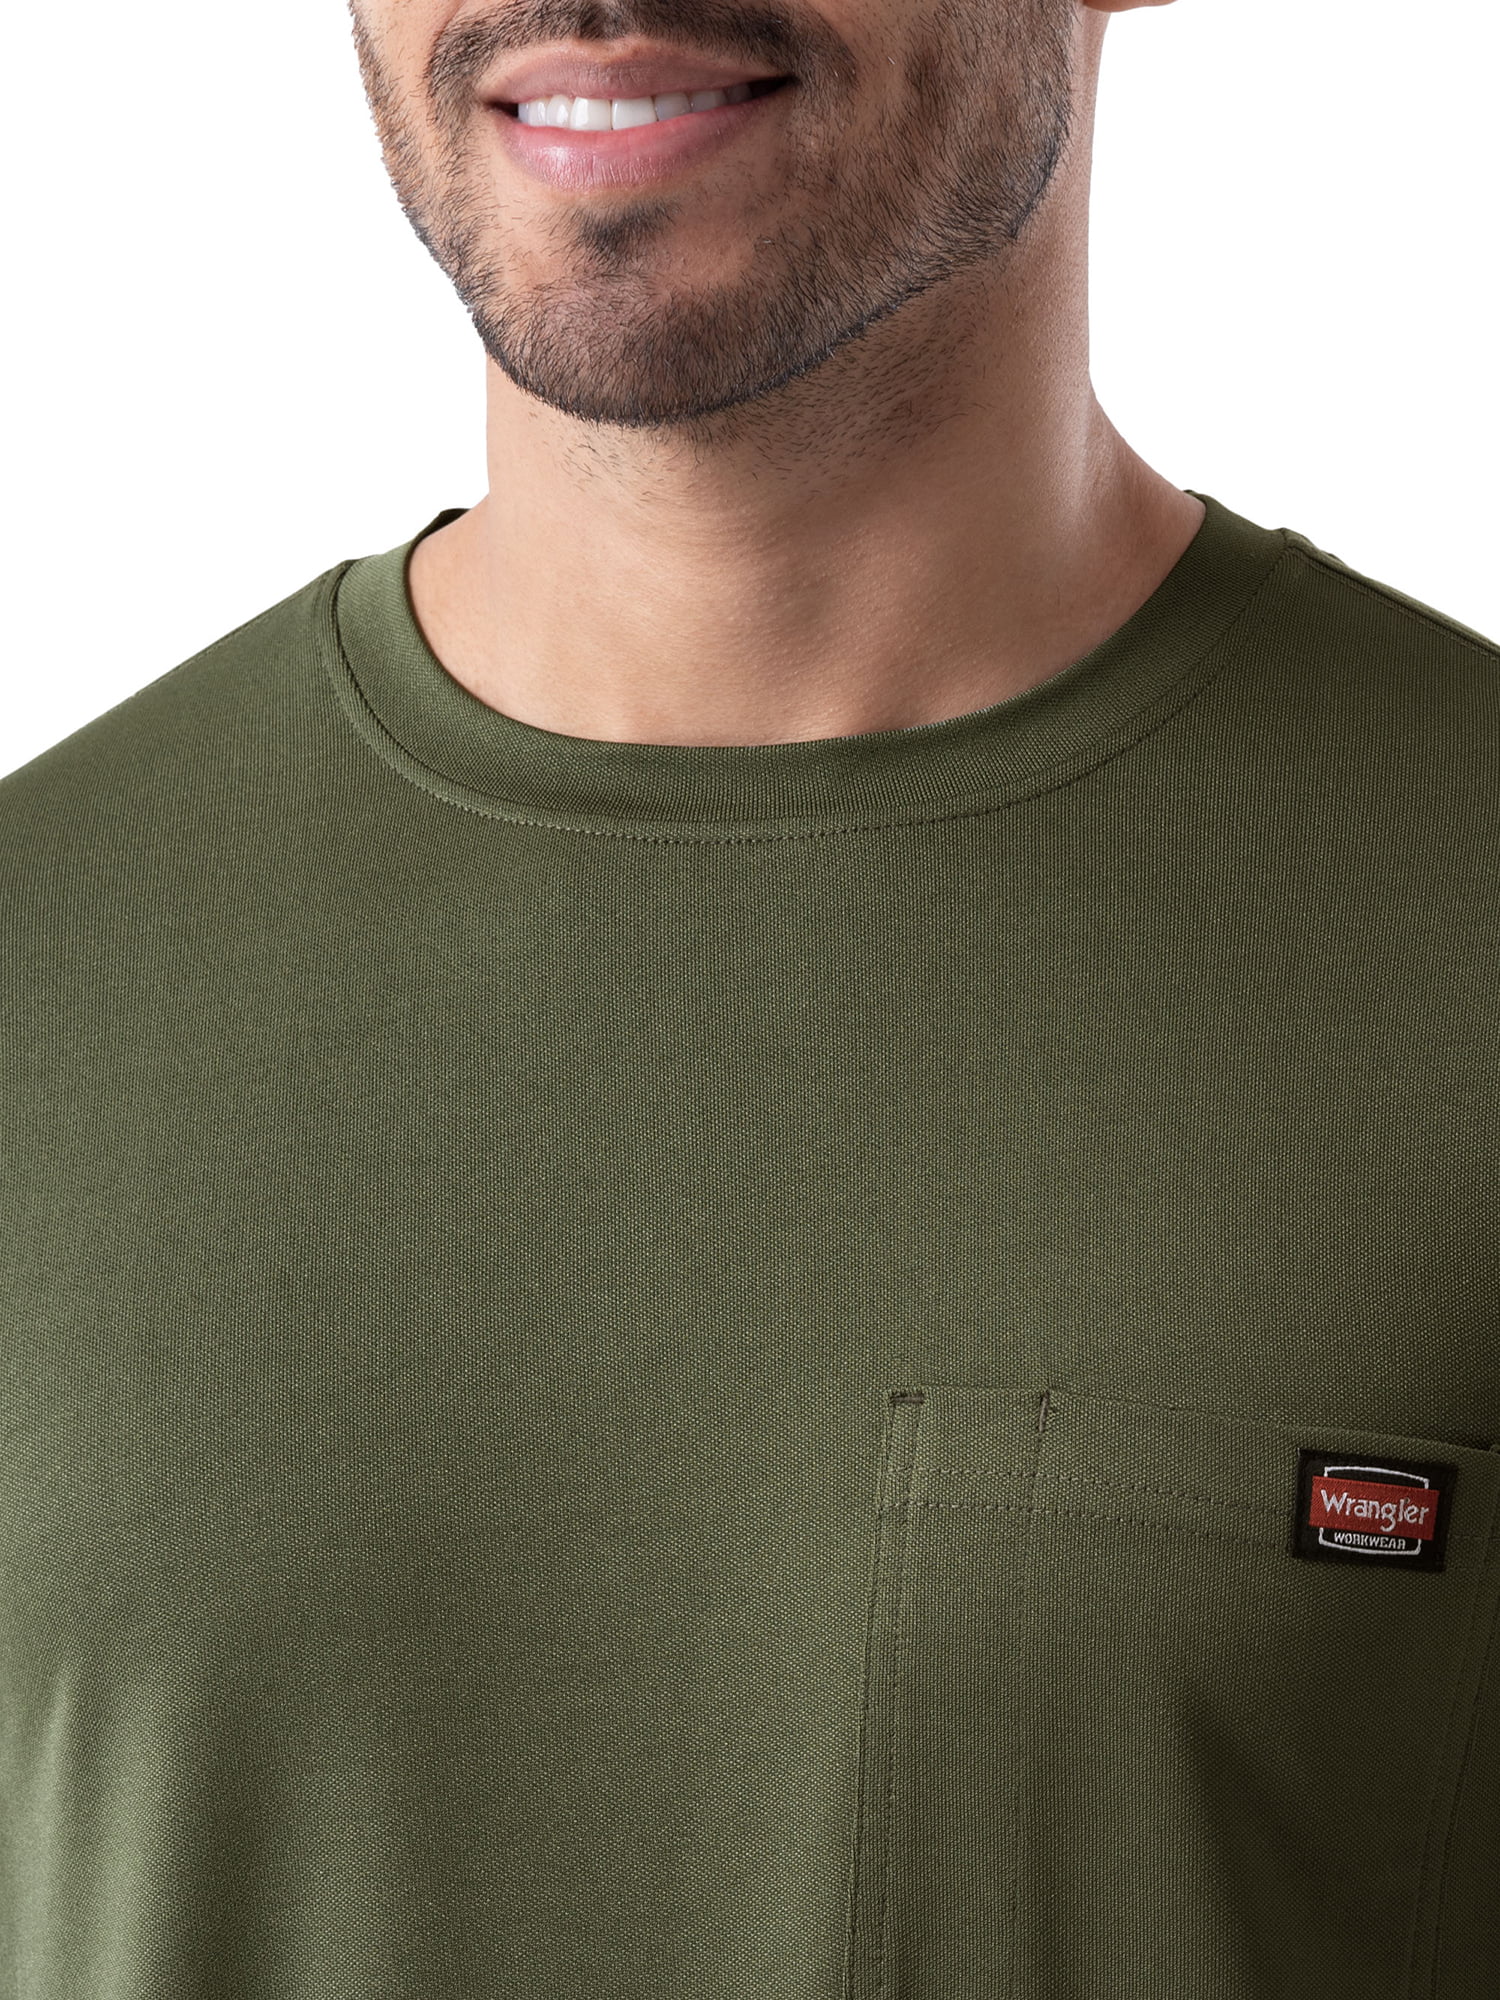 Wrangler Workwear Men's Short Sleeve Performance T-Shirt 